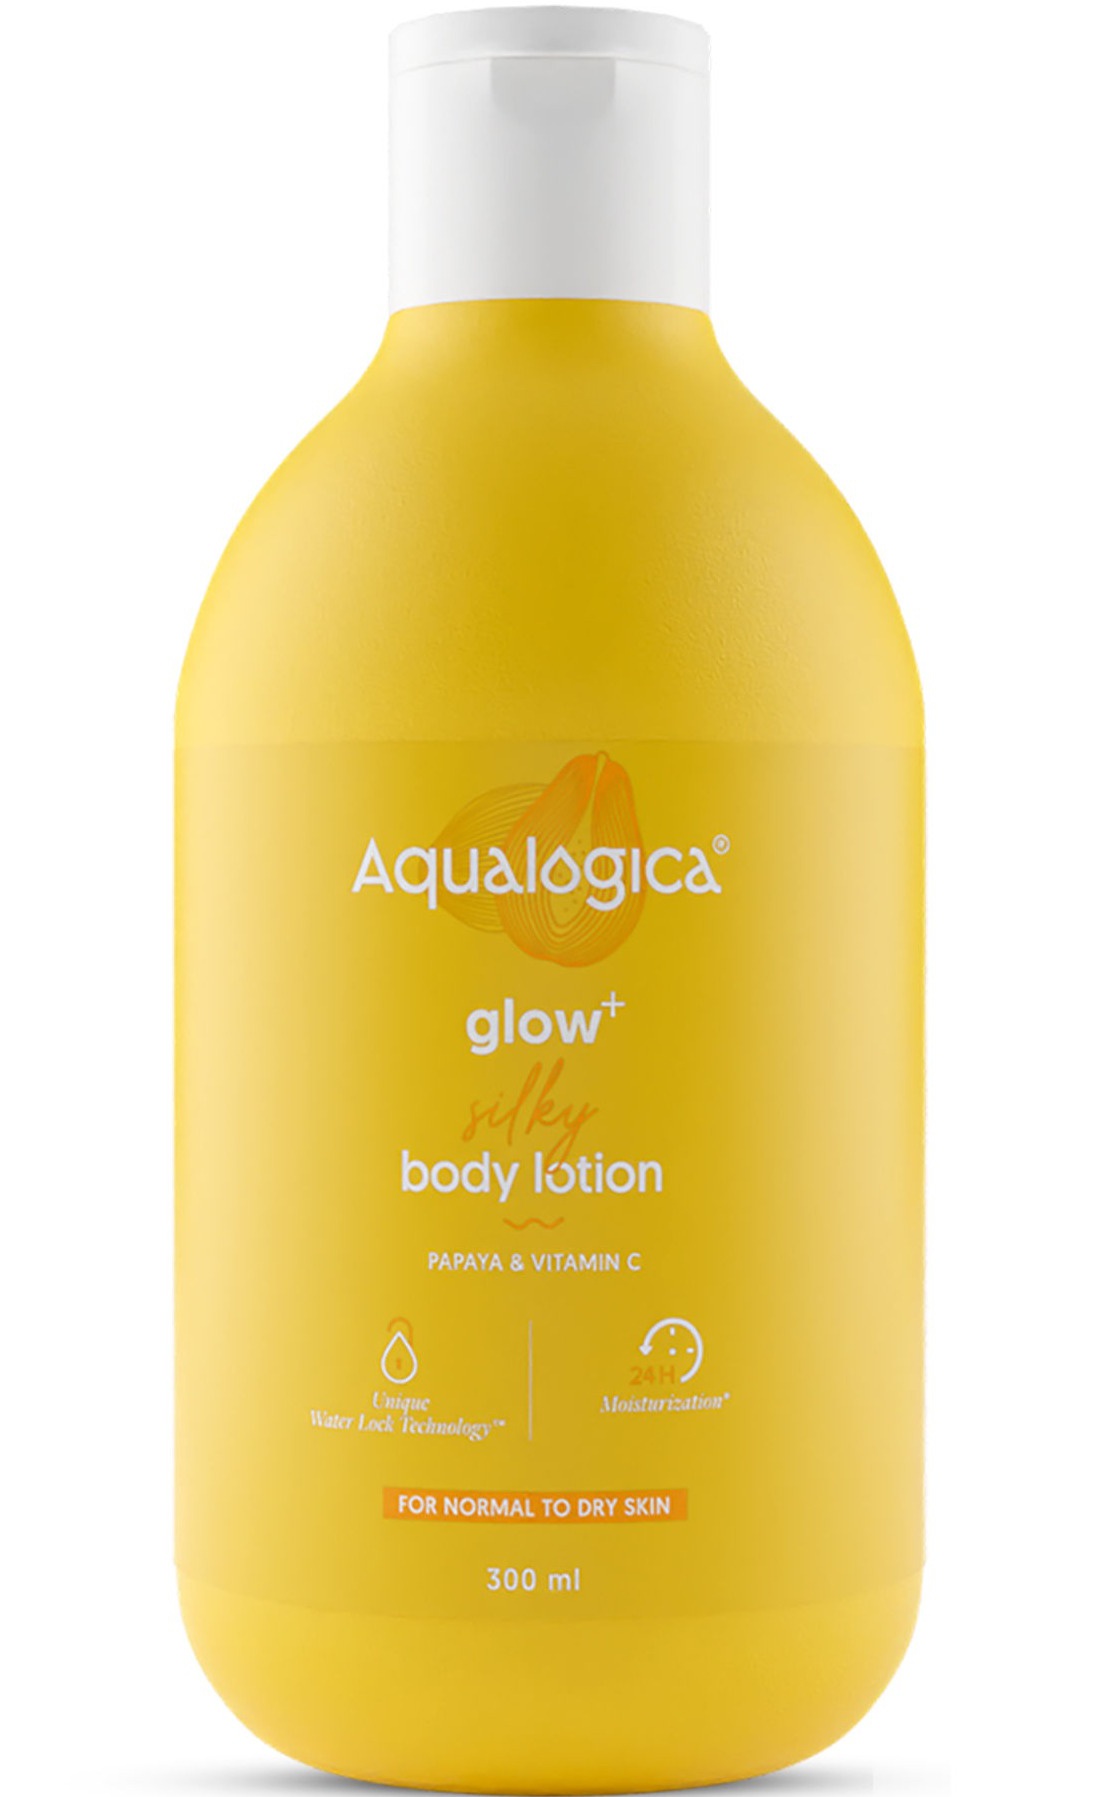 Aqualogica Glow + Silky Body Lotion